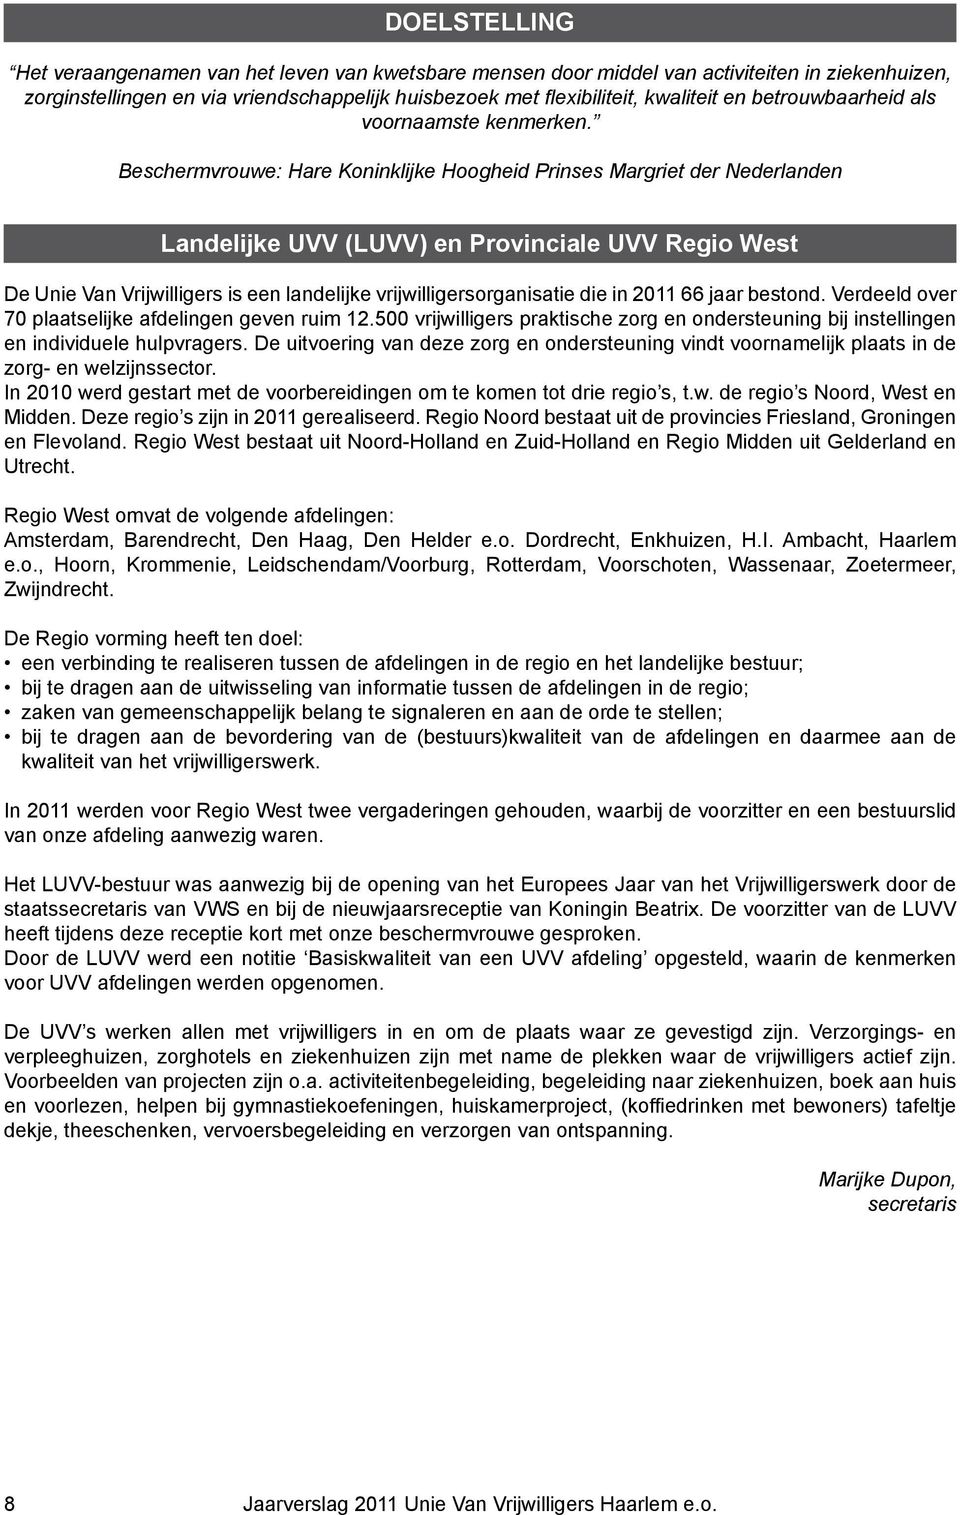 Beschermvrouwe: Hare Koninklijke Hoogheid Prinses Margriet der Nederlanden Landelijke UVV (LUVV) en Provinciale UVV Regio West De Unie Van Vrijwilligers is een landelijke vrijwilligersorganisatie die